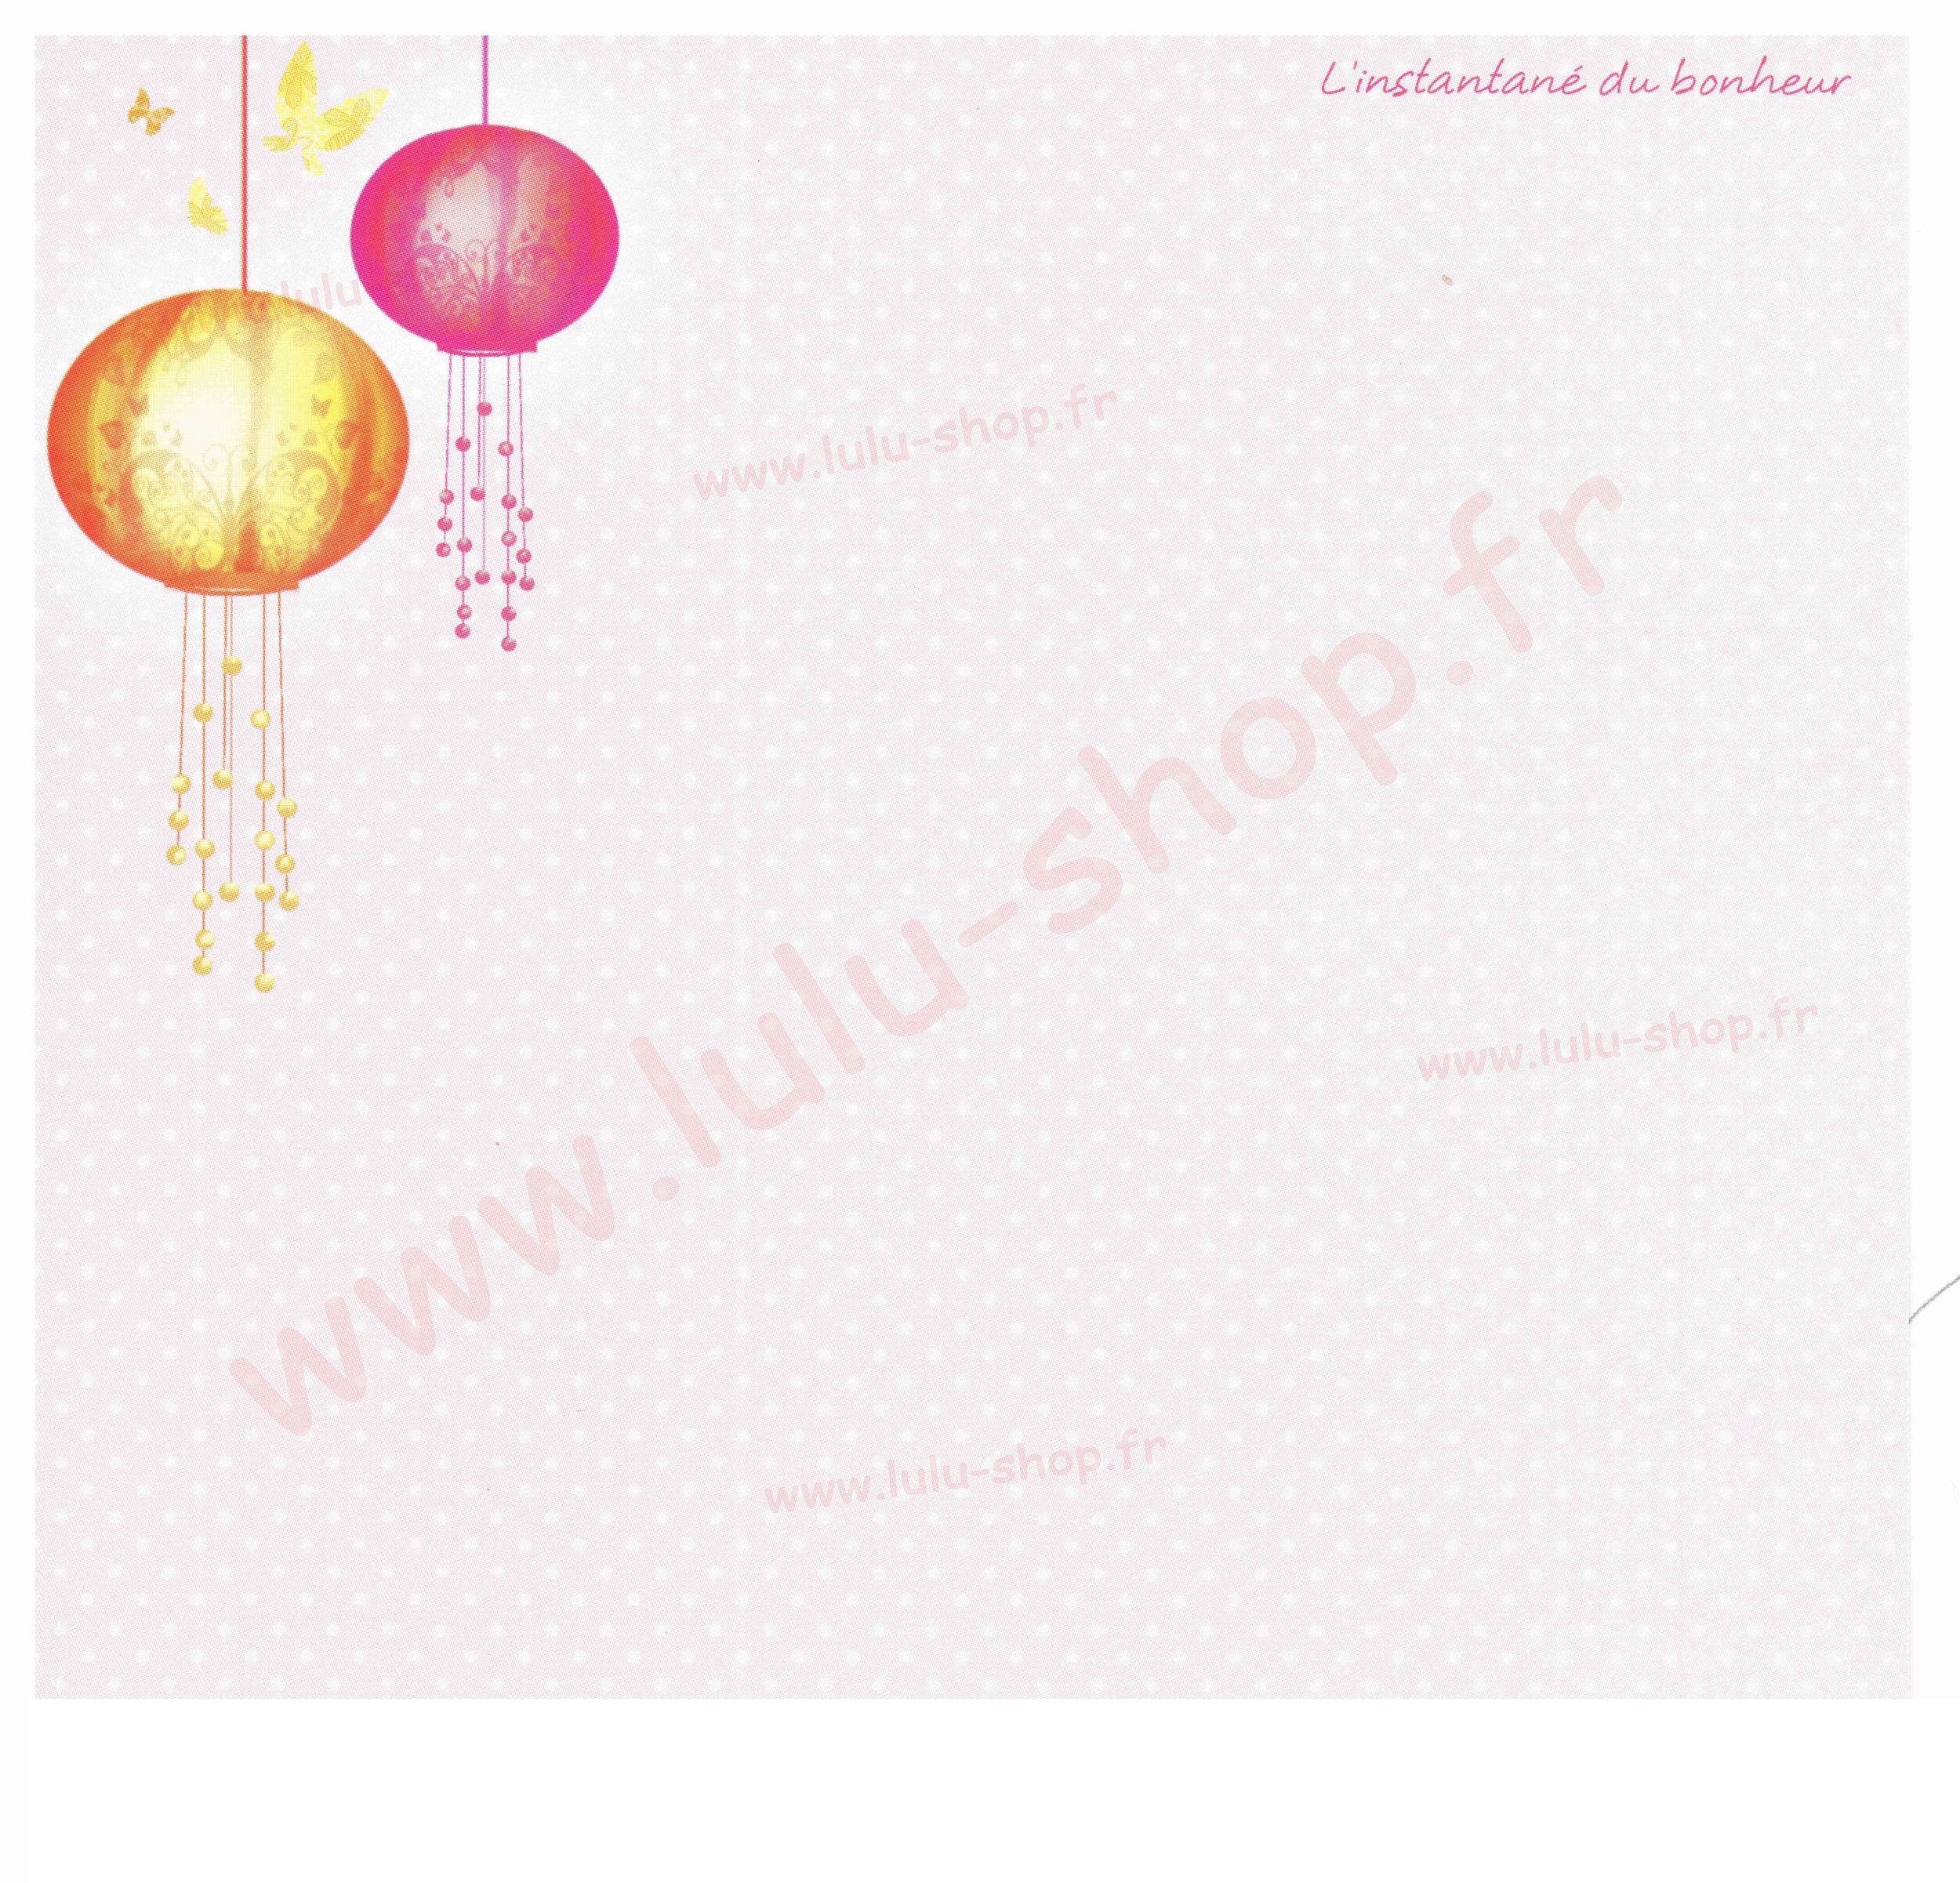 www.lulu-shop.fr Linstantané du Bonheur